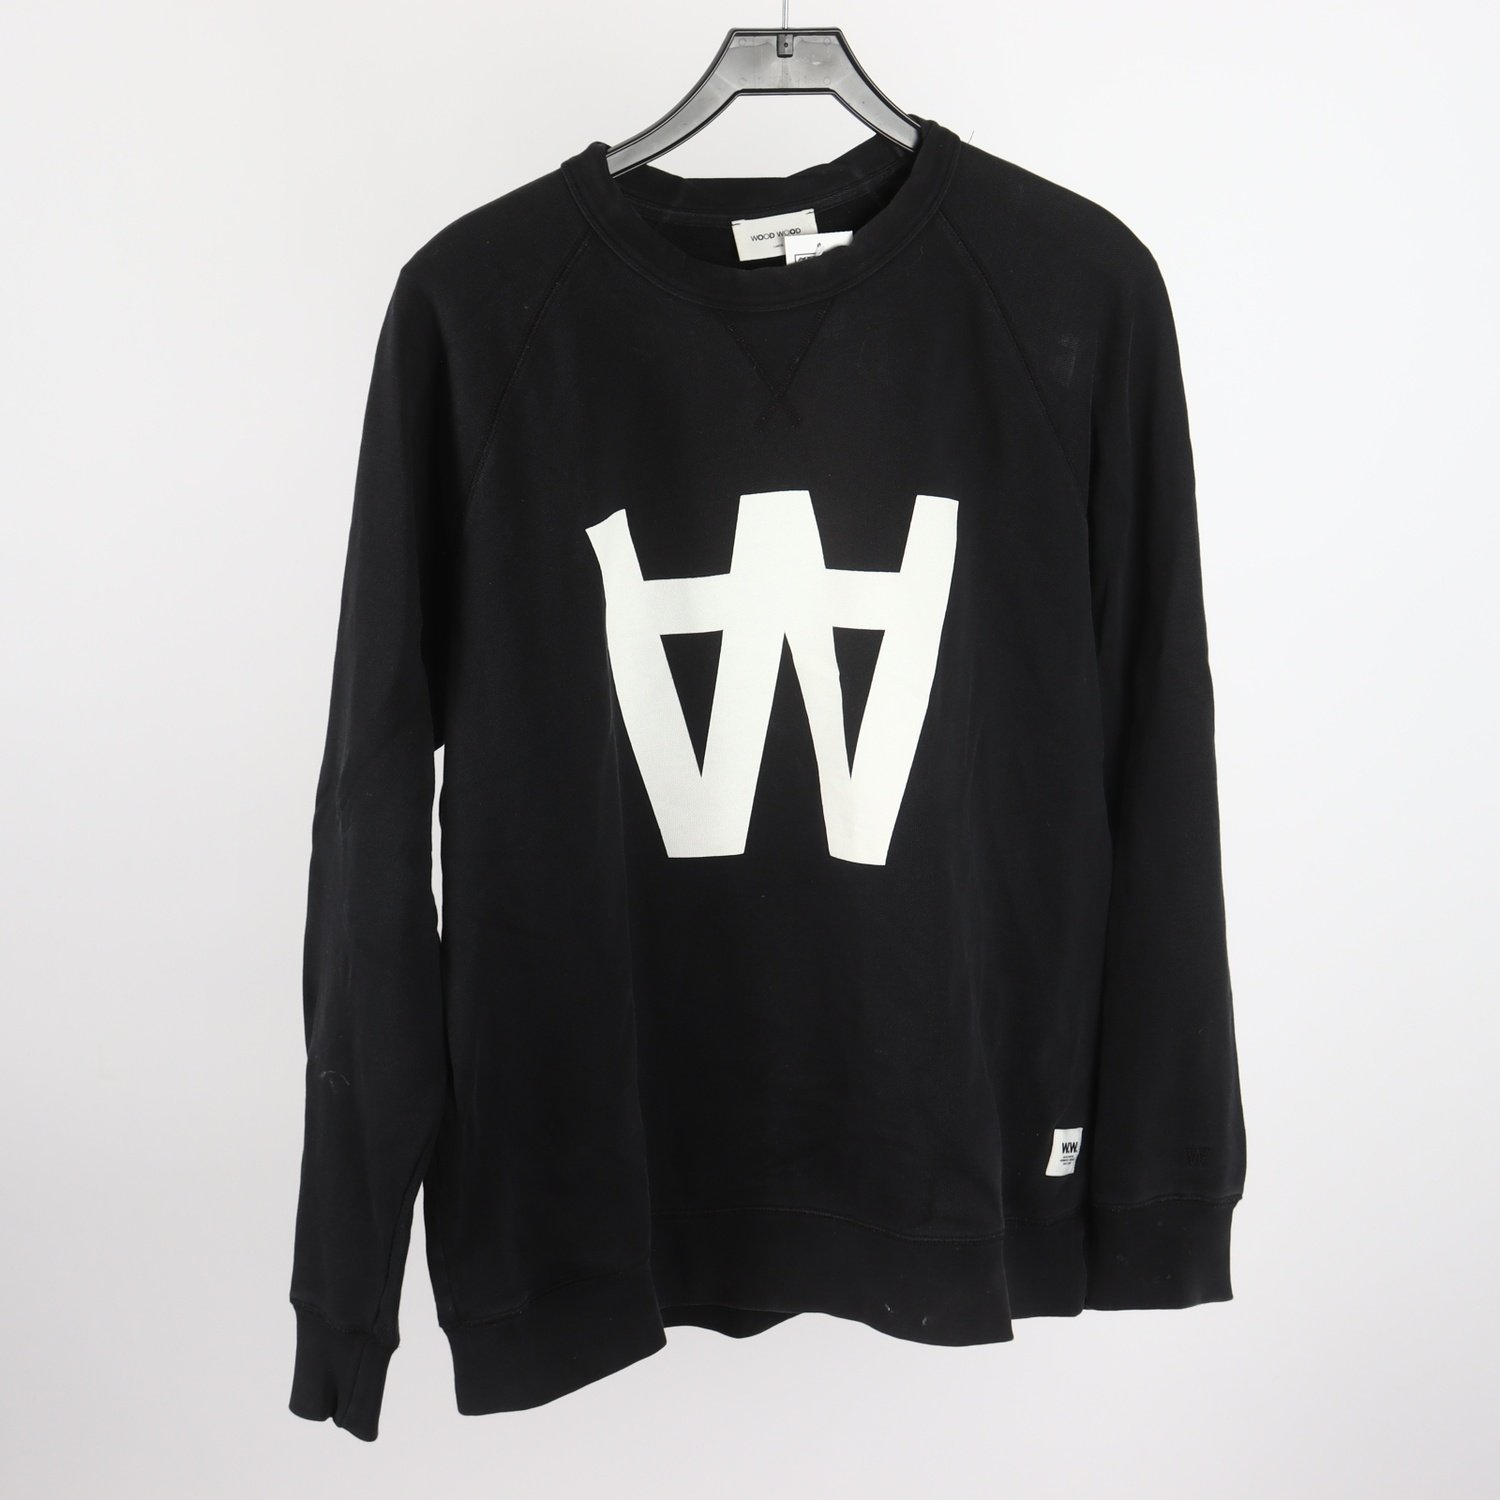 Sweatshirt, Wood Wood, svart, stl. L